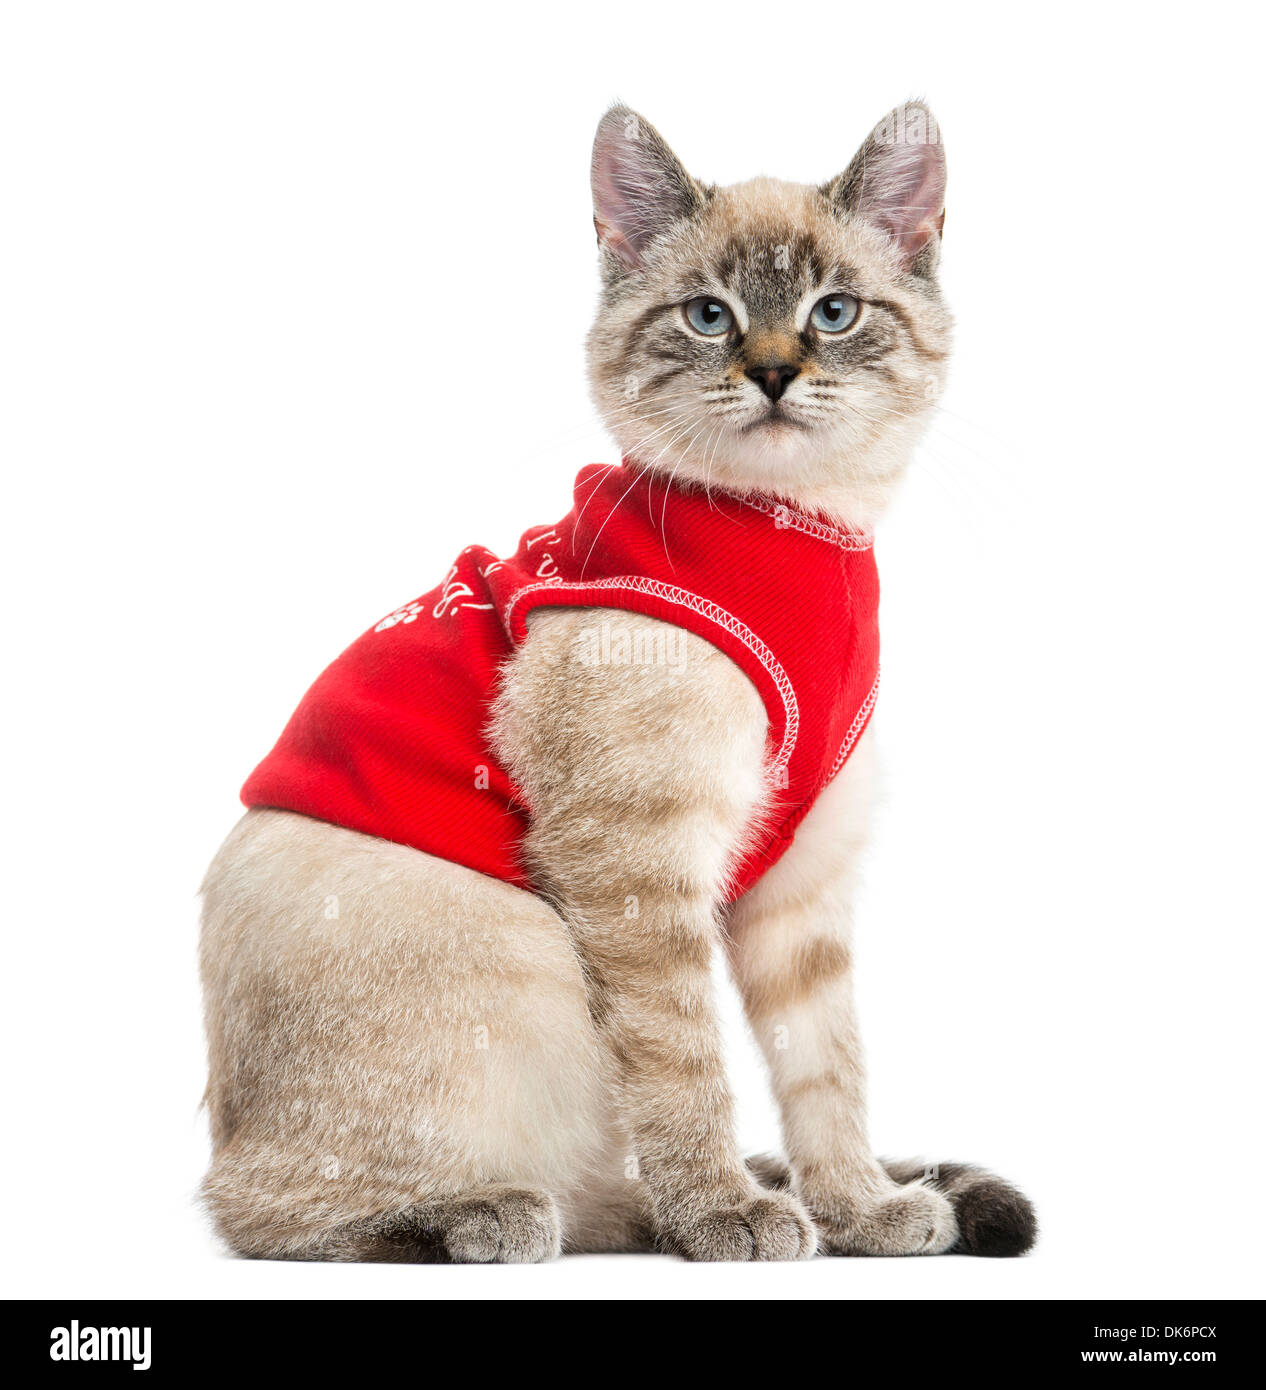 Vue latérale d'un chat siamois avec Red top, regardant la caméra, âgé de 5 mois, contre fond blanc Banque D'Images